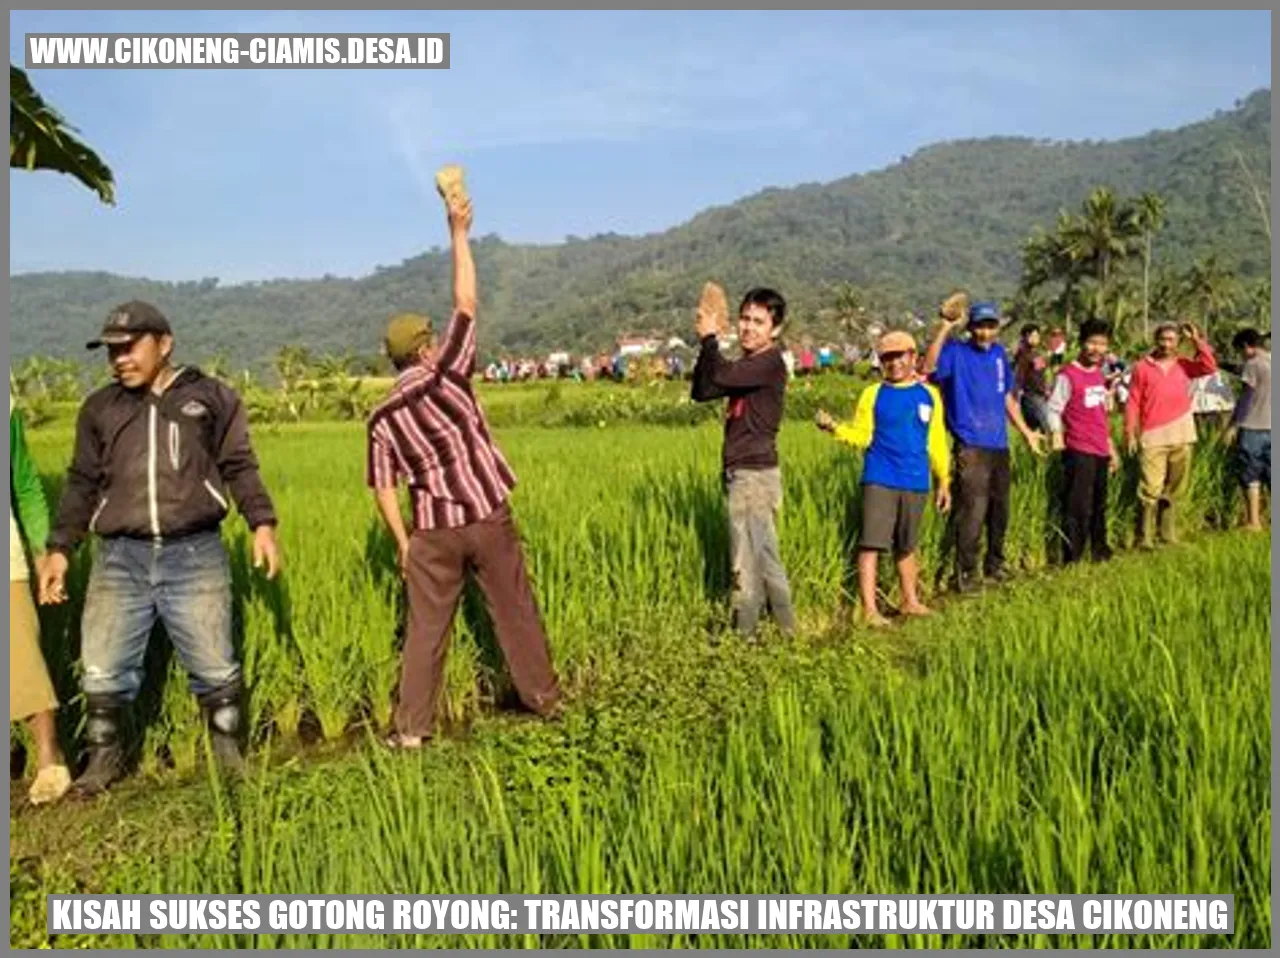 Kisah Sukses Gotong Royong: Transformasi Infrastruktur Desa Cikoneng